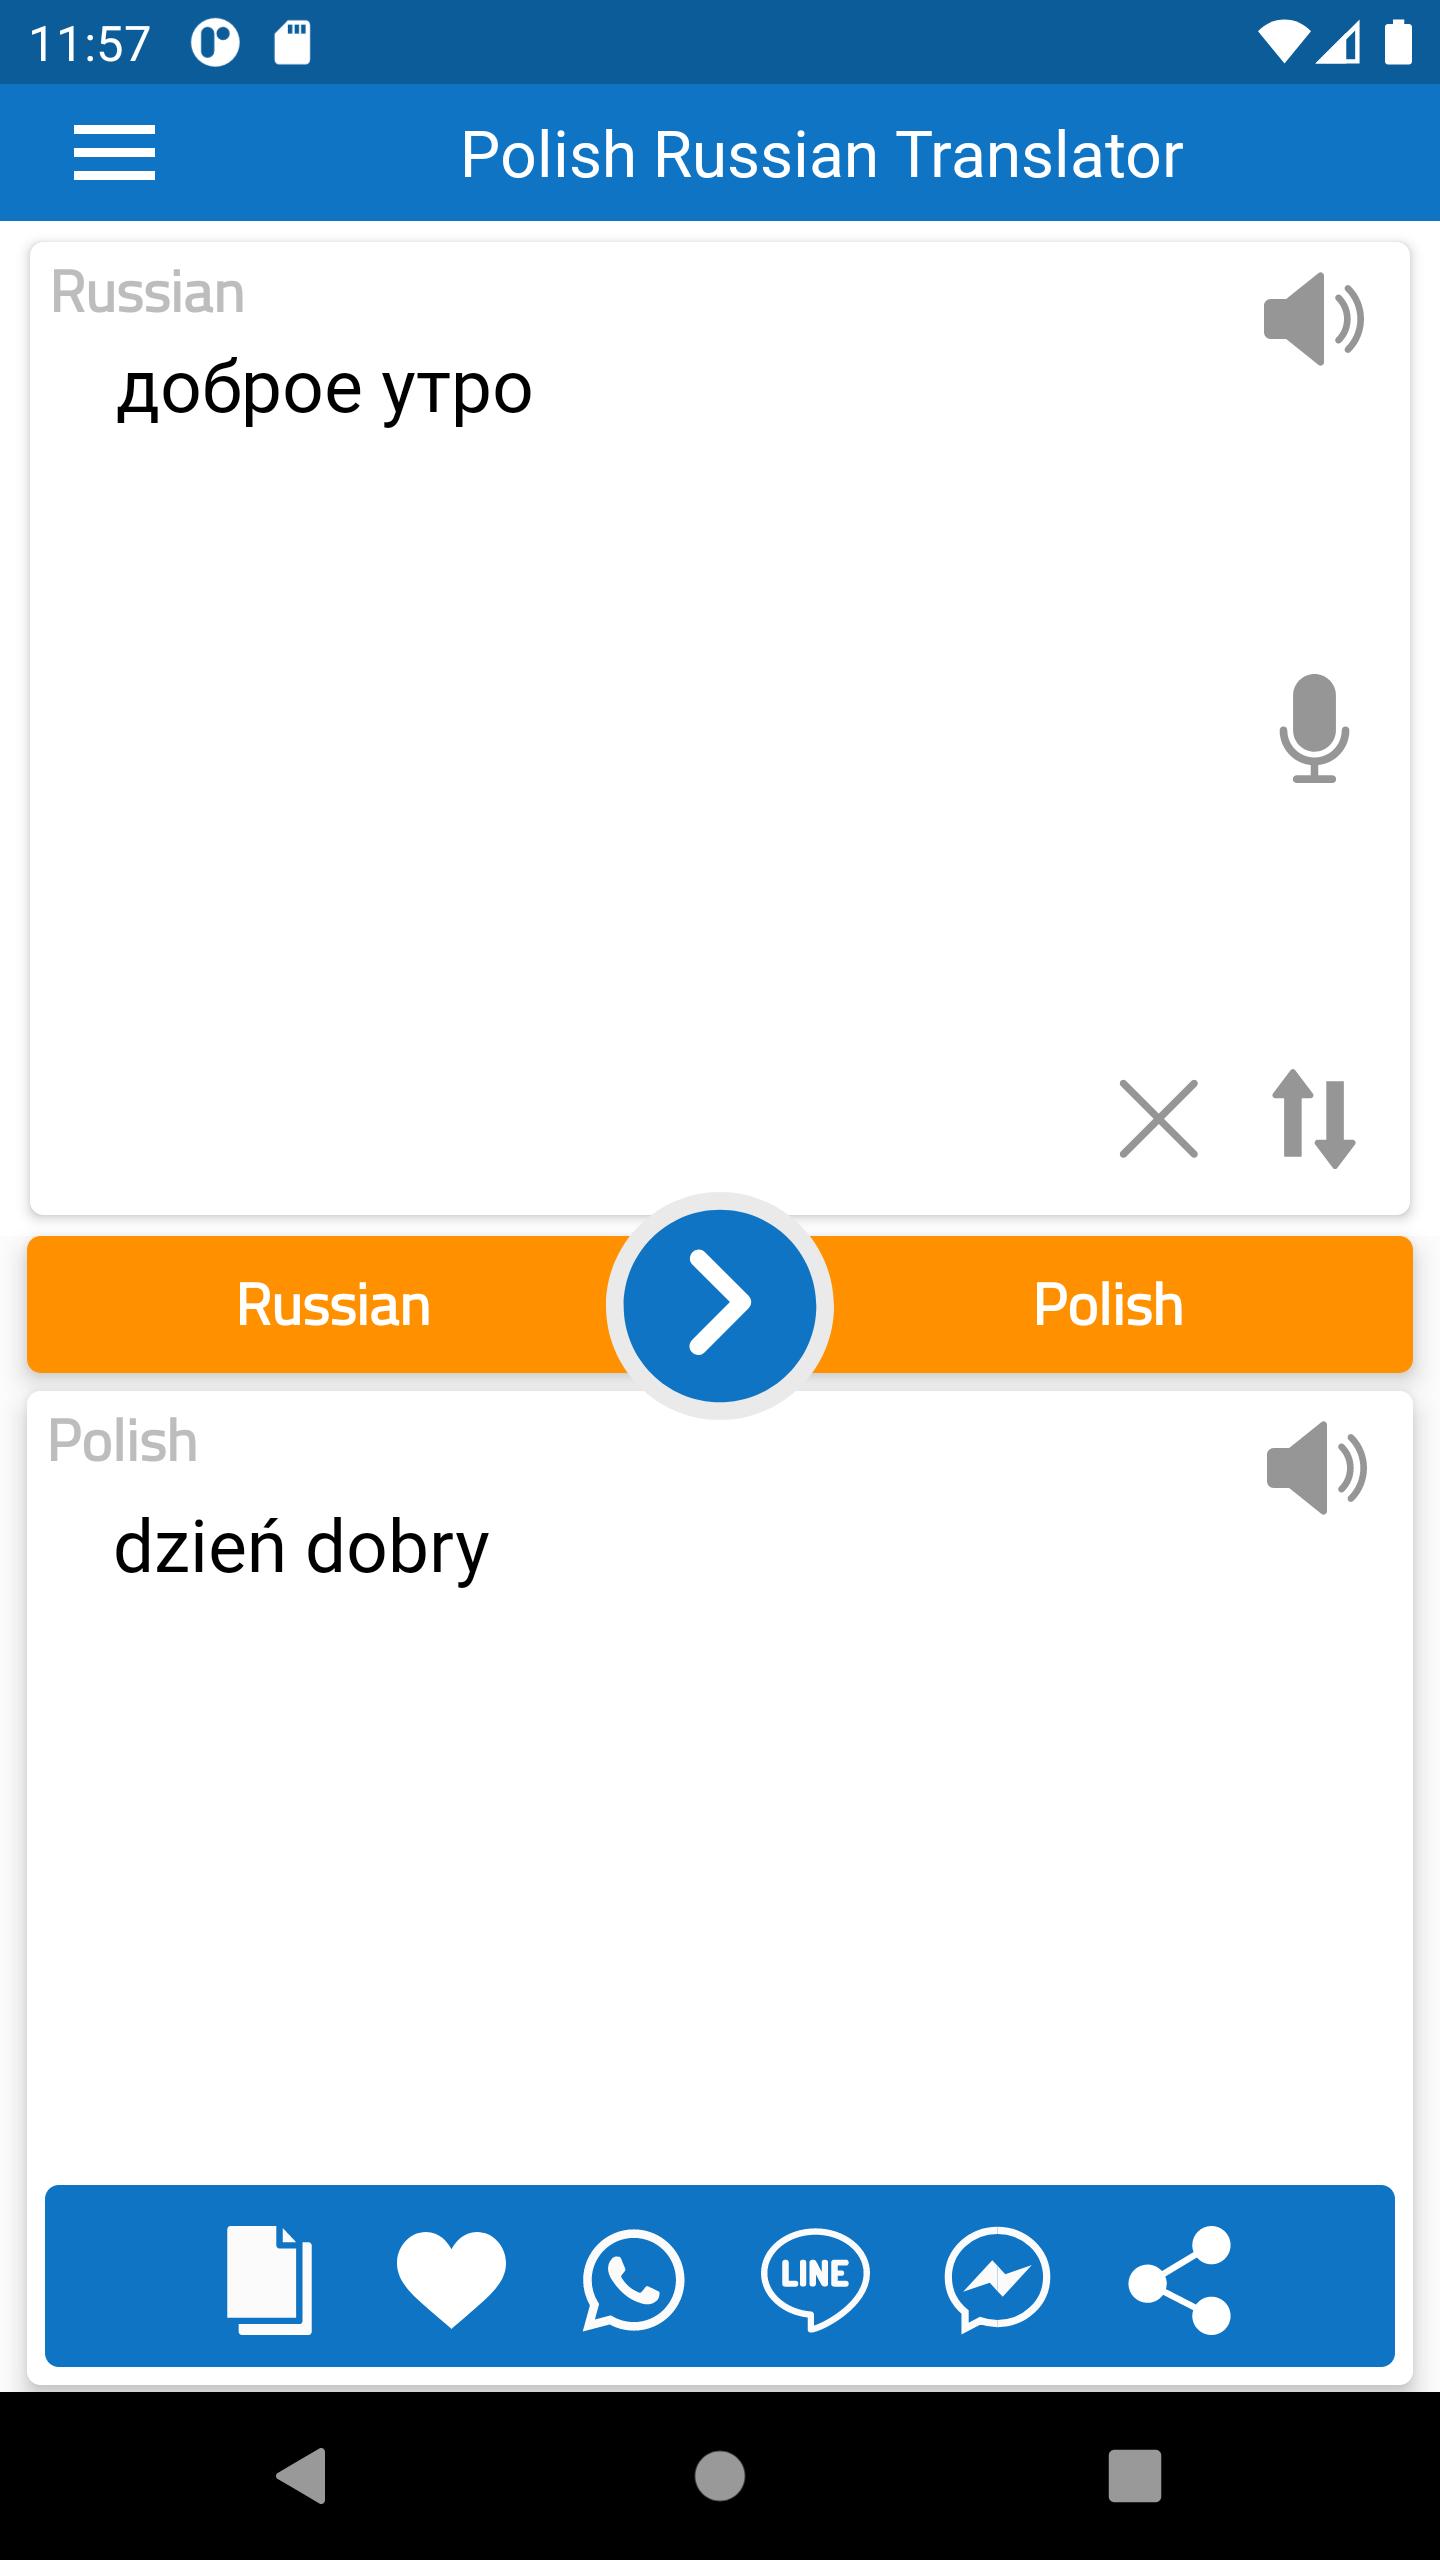 Polsko Rosyjski Darmowy Tłumacz for Android - APK Download